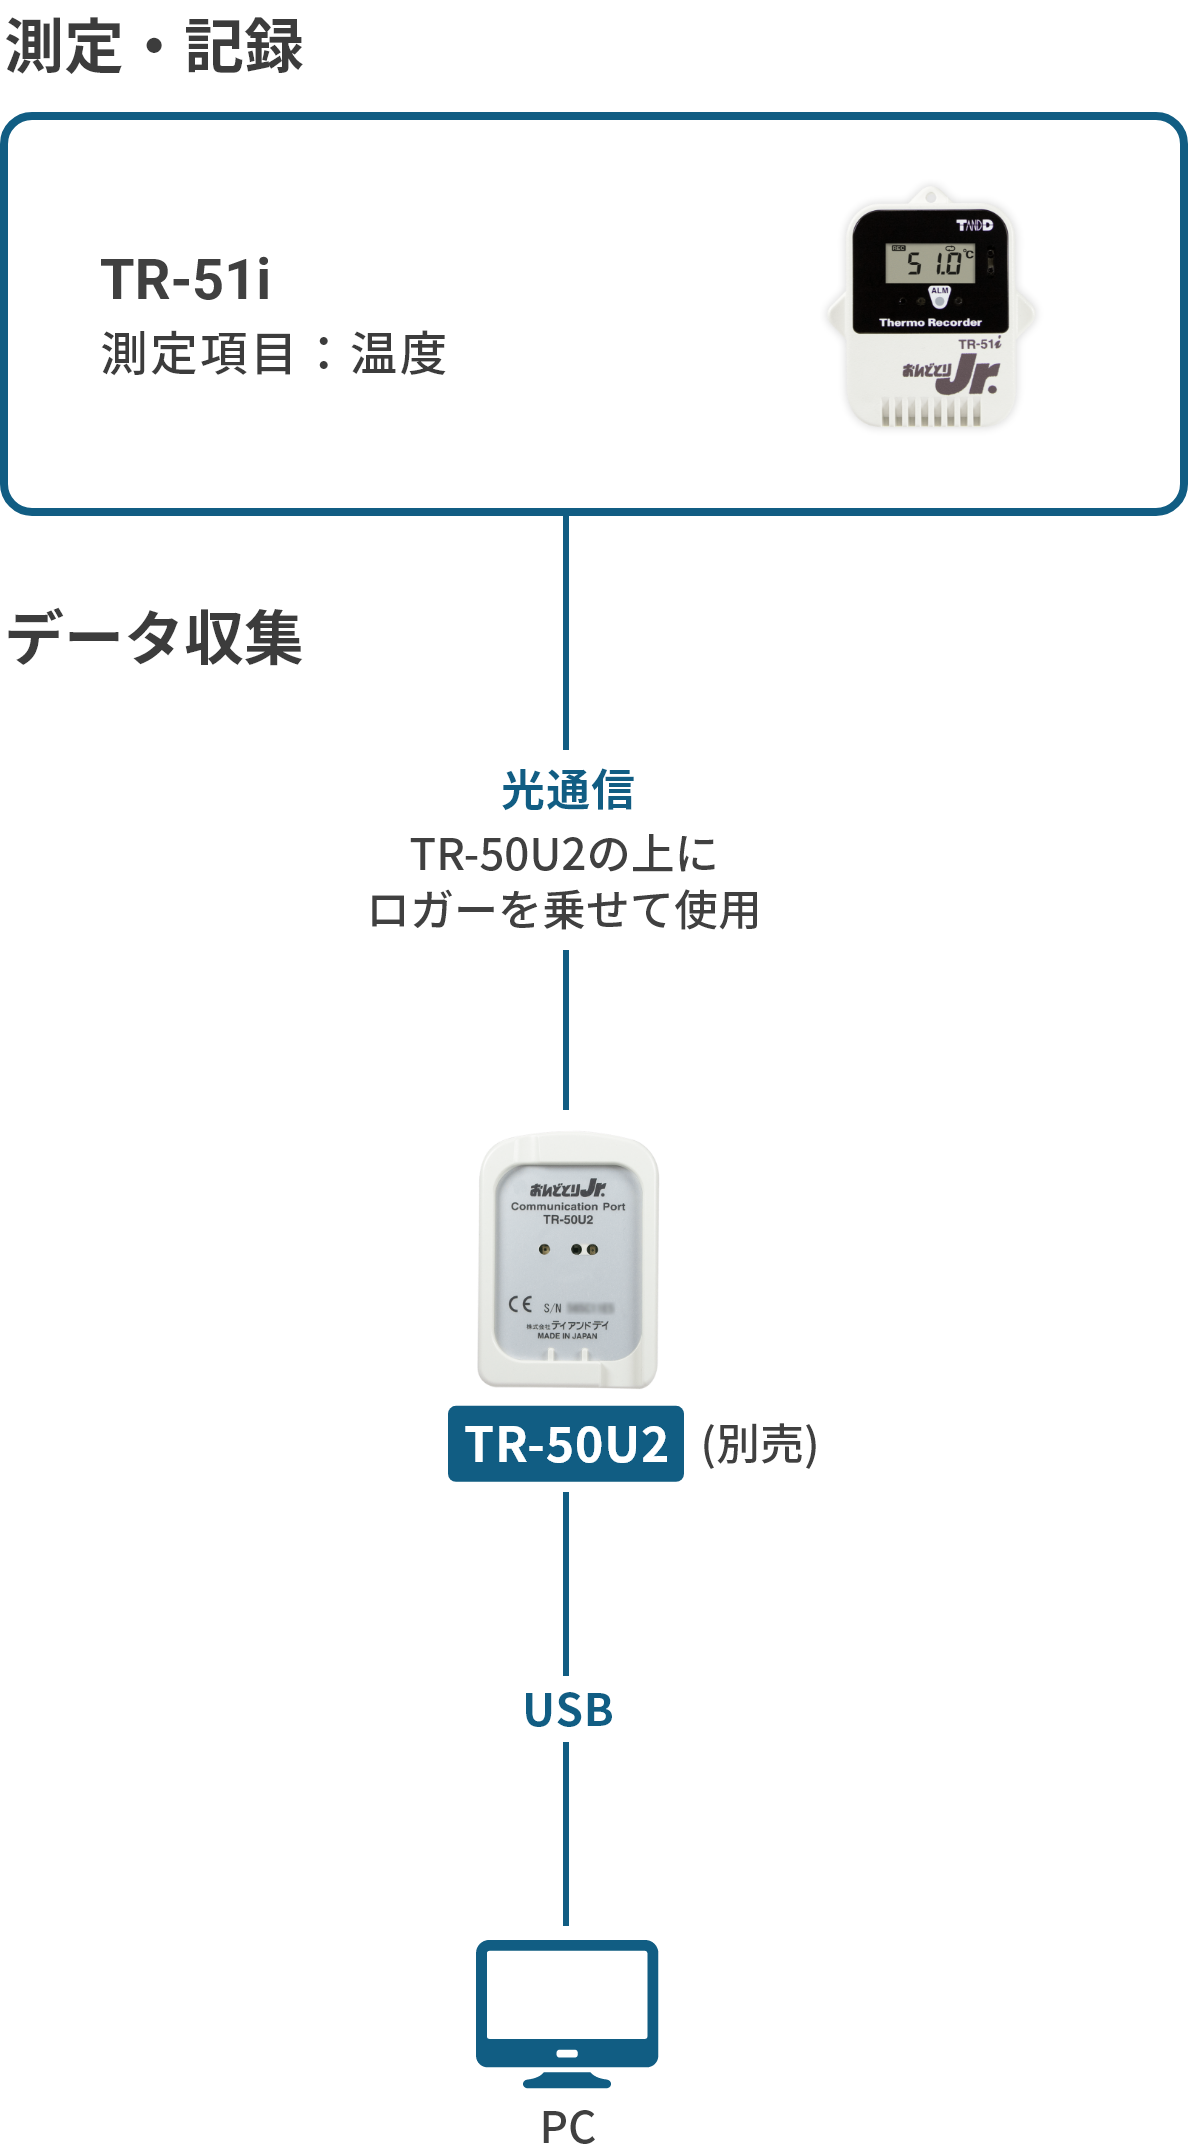 クリアランスsale!期間限定! TD TR-50U2 コミュニケーションポート おんどとりJr.用 温度データ収集機器 PC接続 